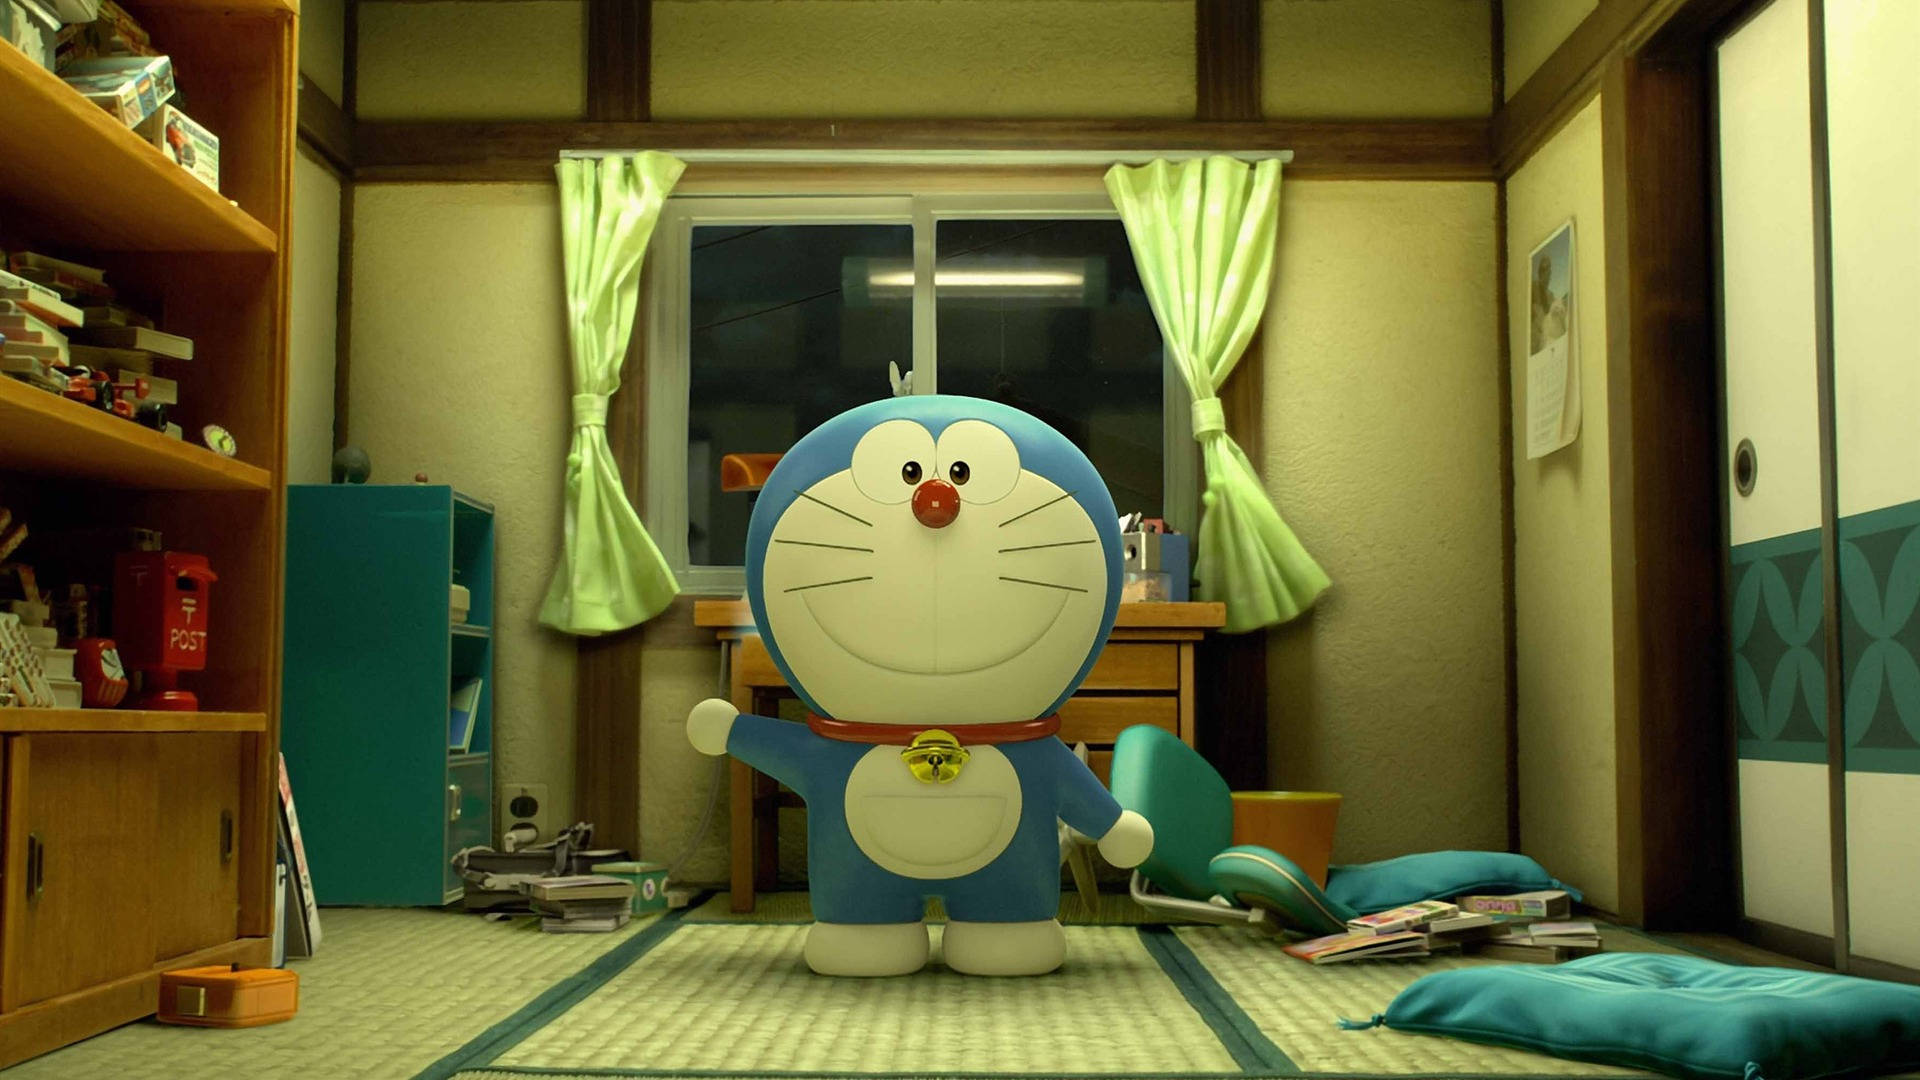 In The Bedroom Doraemon 3d